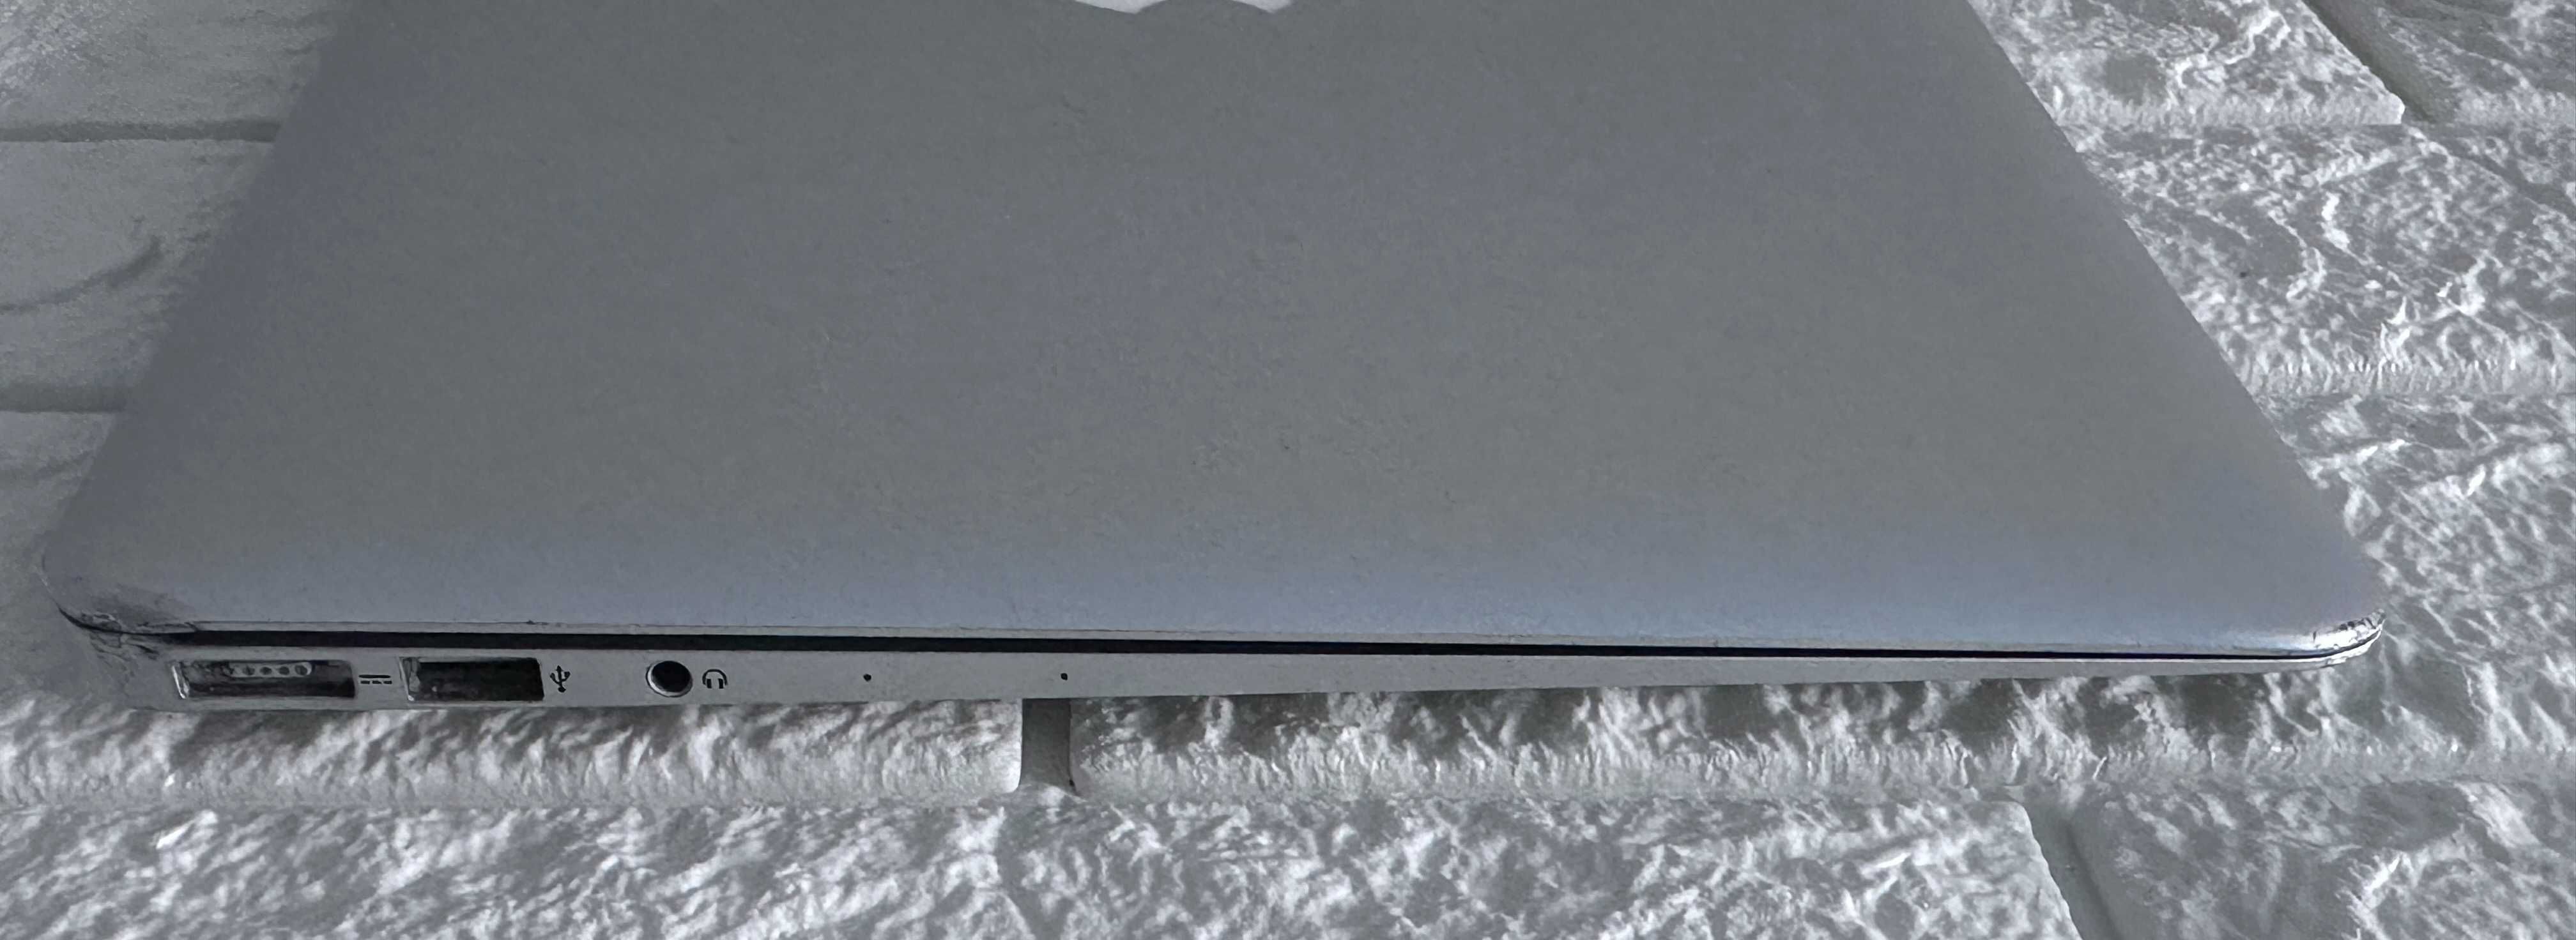 MacBook Air 13 2013 I5 4GB RAM 128GB SSD